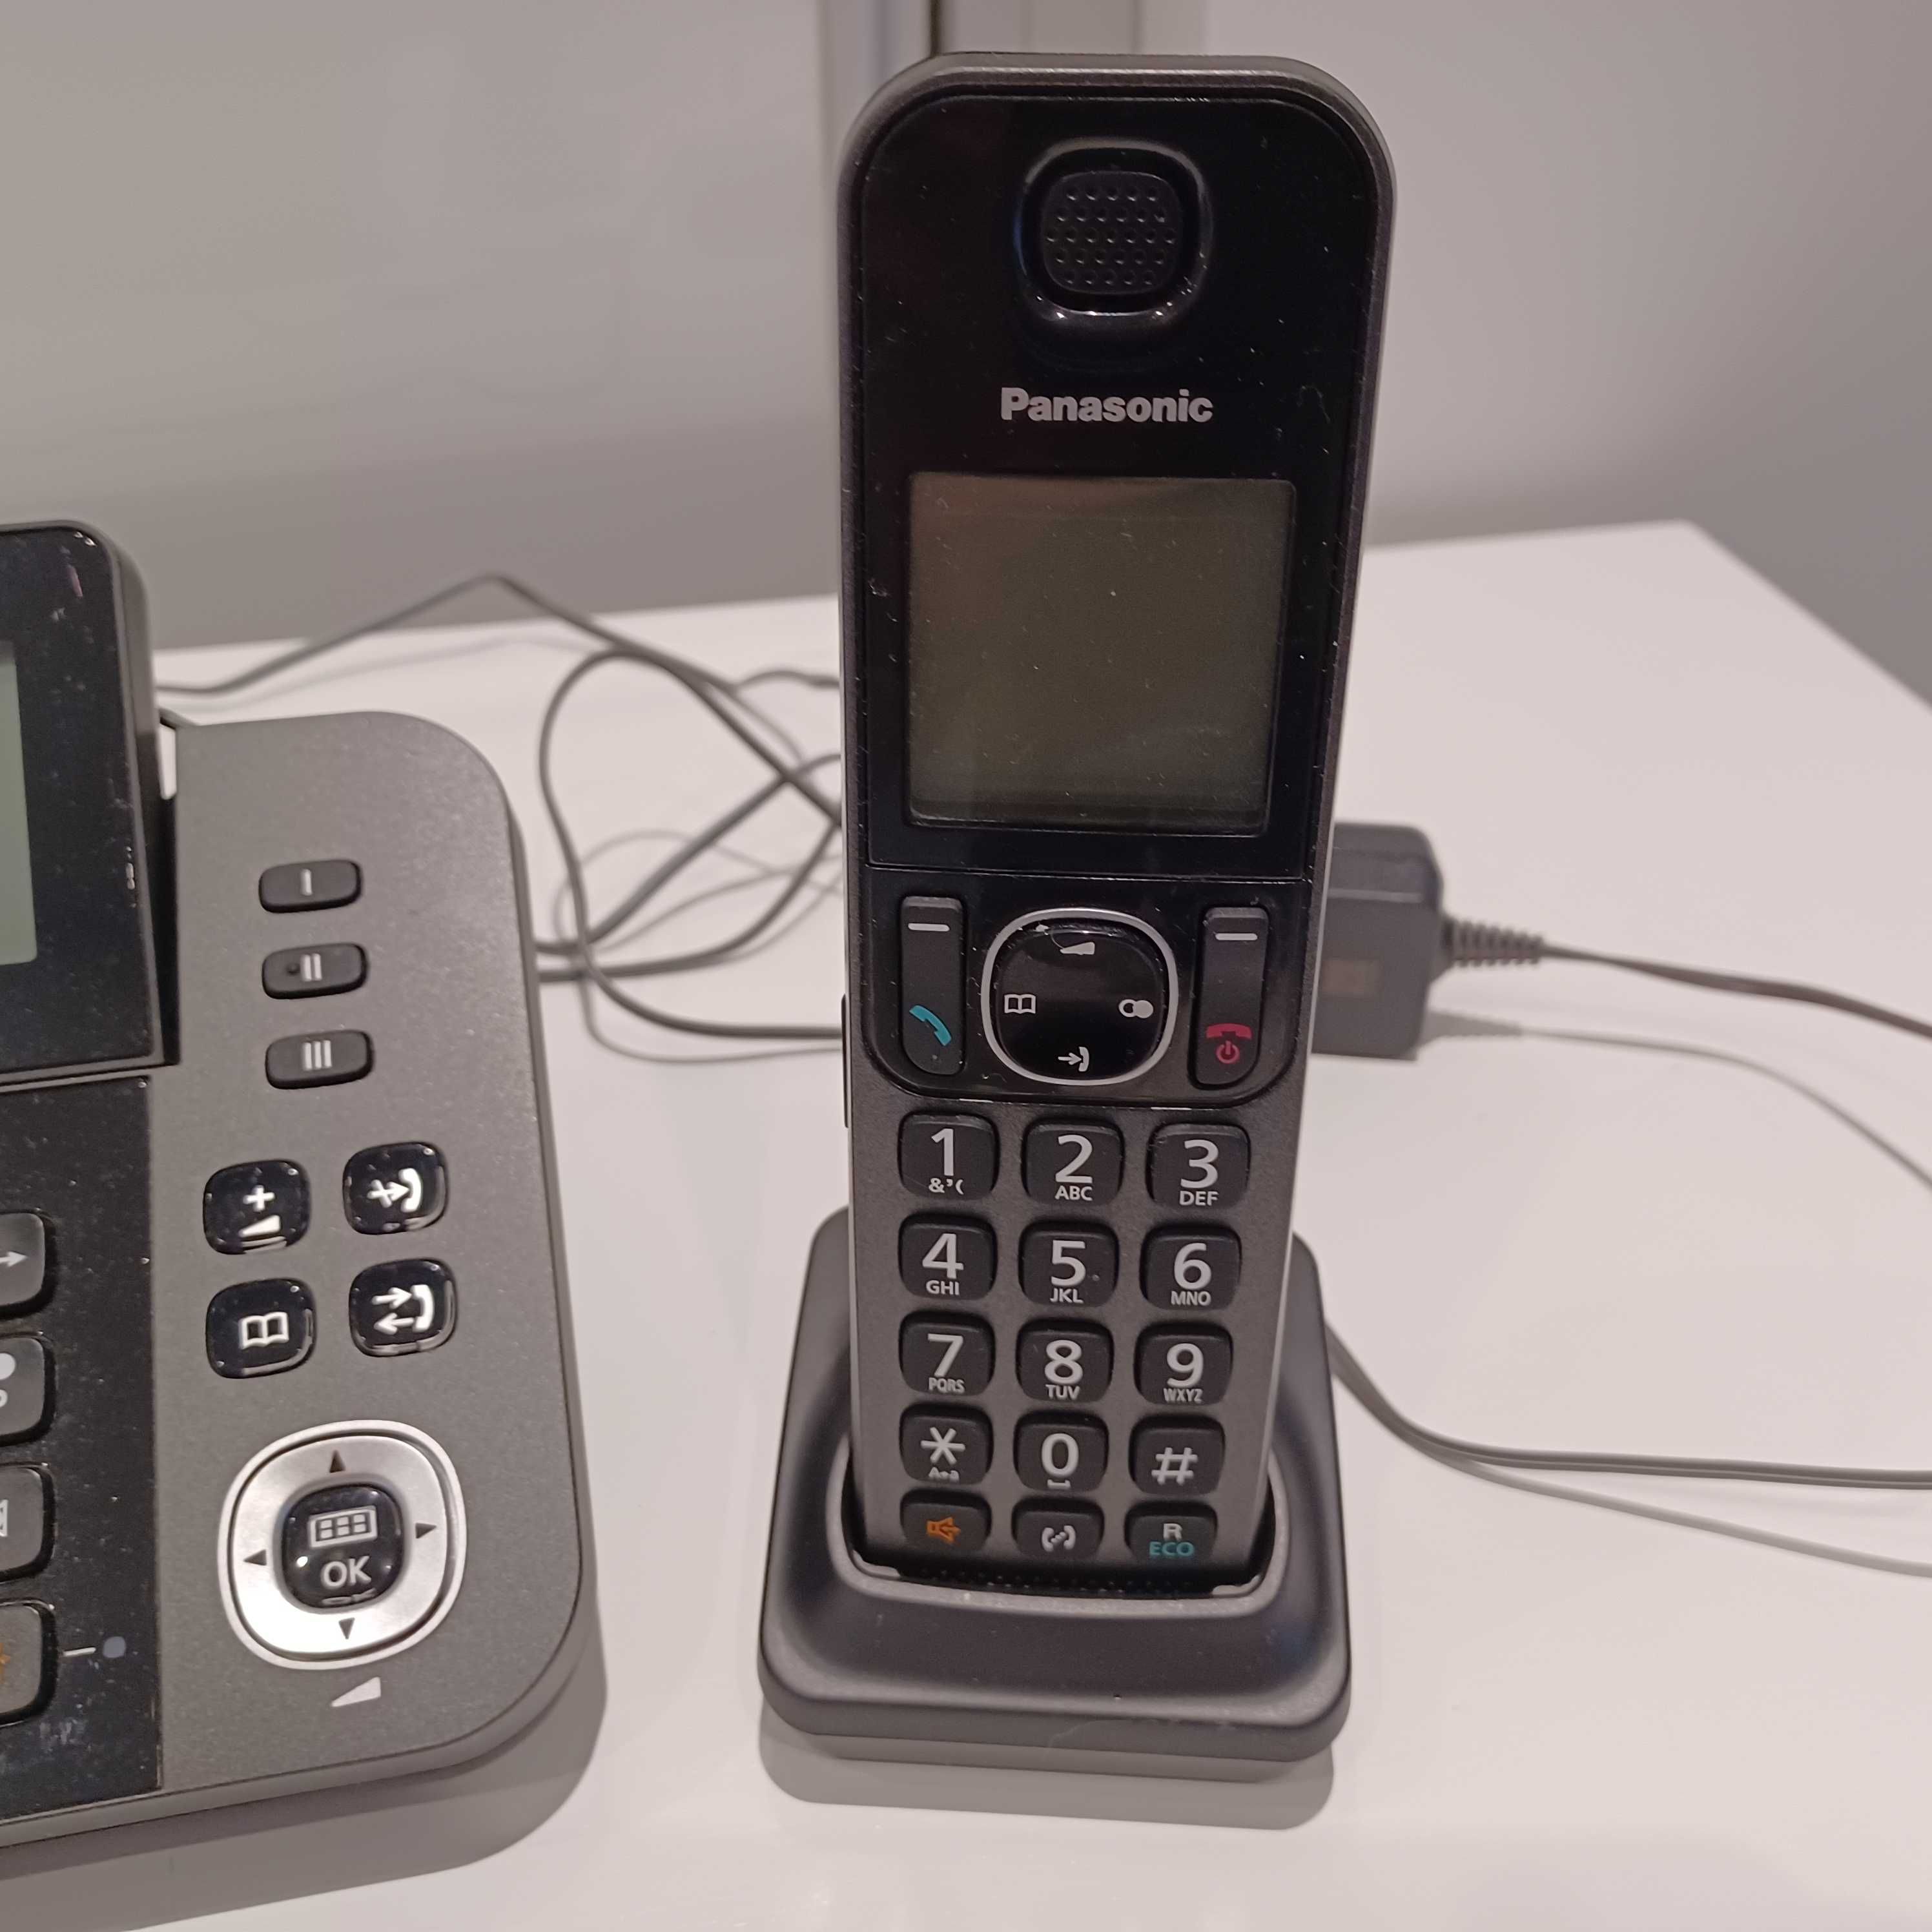 Telefon Stacjonarny Panasonic KX-TGF310